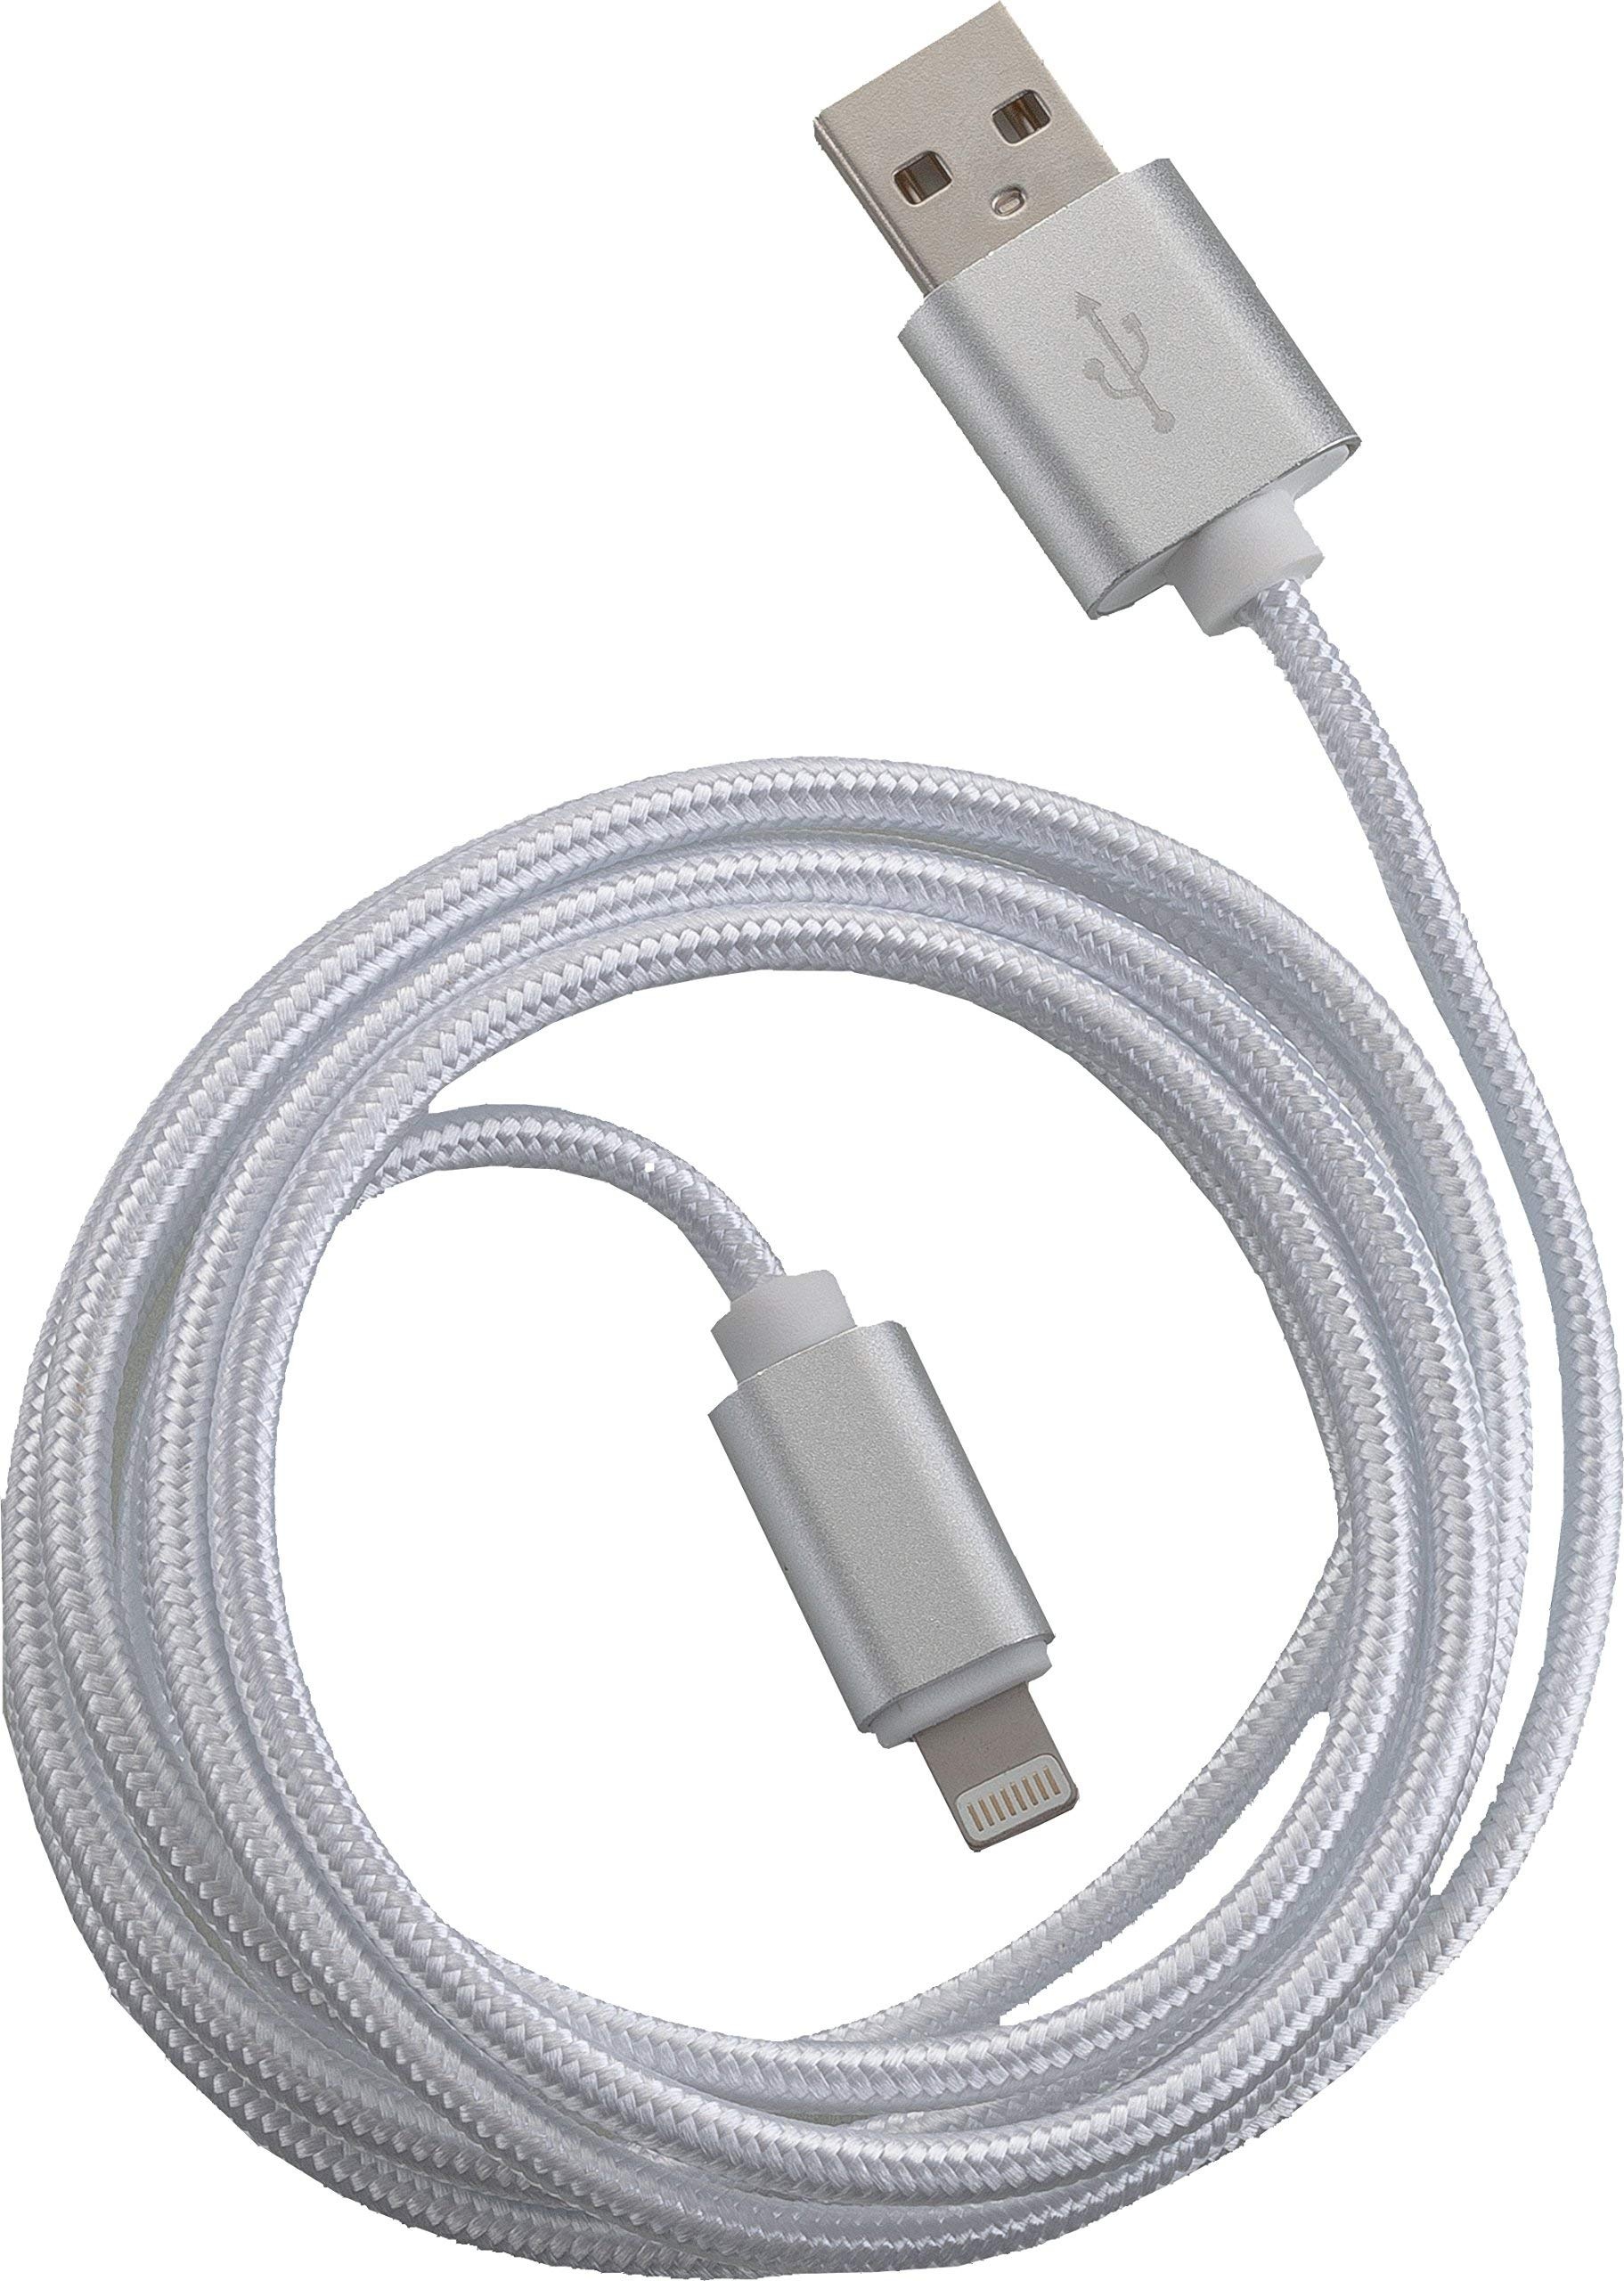 PETER JÄCKEL Fashion 1,5m USB Data Cable White für Apple Lightning mit Sync- und Ladefunktion